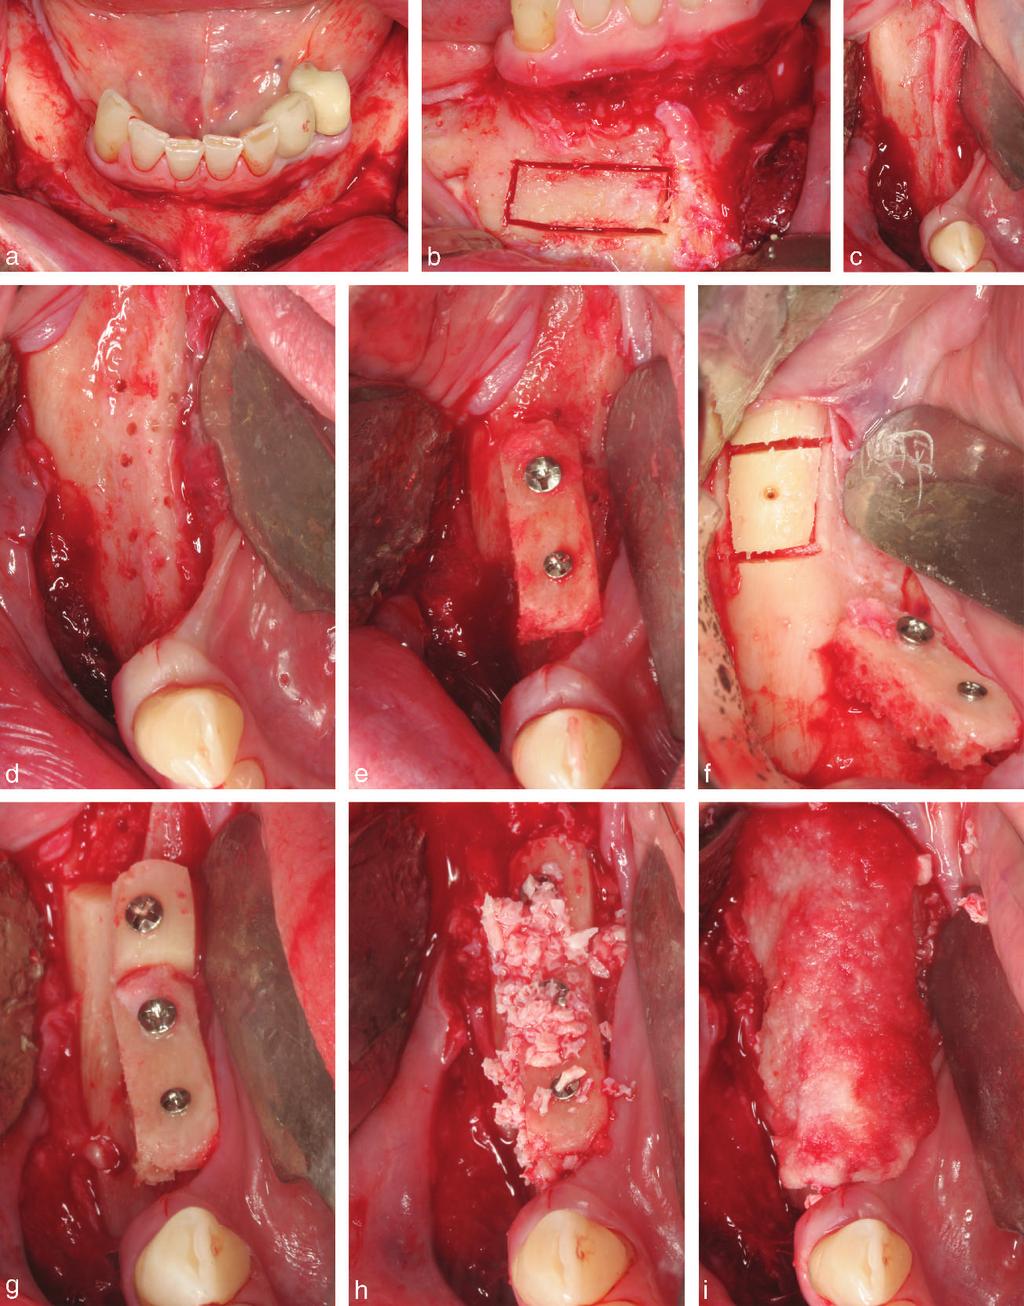 Peñarrocha et al FIGURE 2. Vertical augmentation surgery. (a) Flap raised, showing both mentonian nerves. (b) Chin graft with piezoelectric technique. (c) Alveolar ridge.